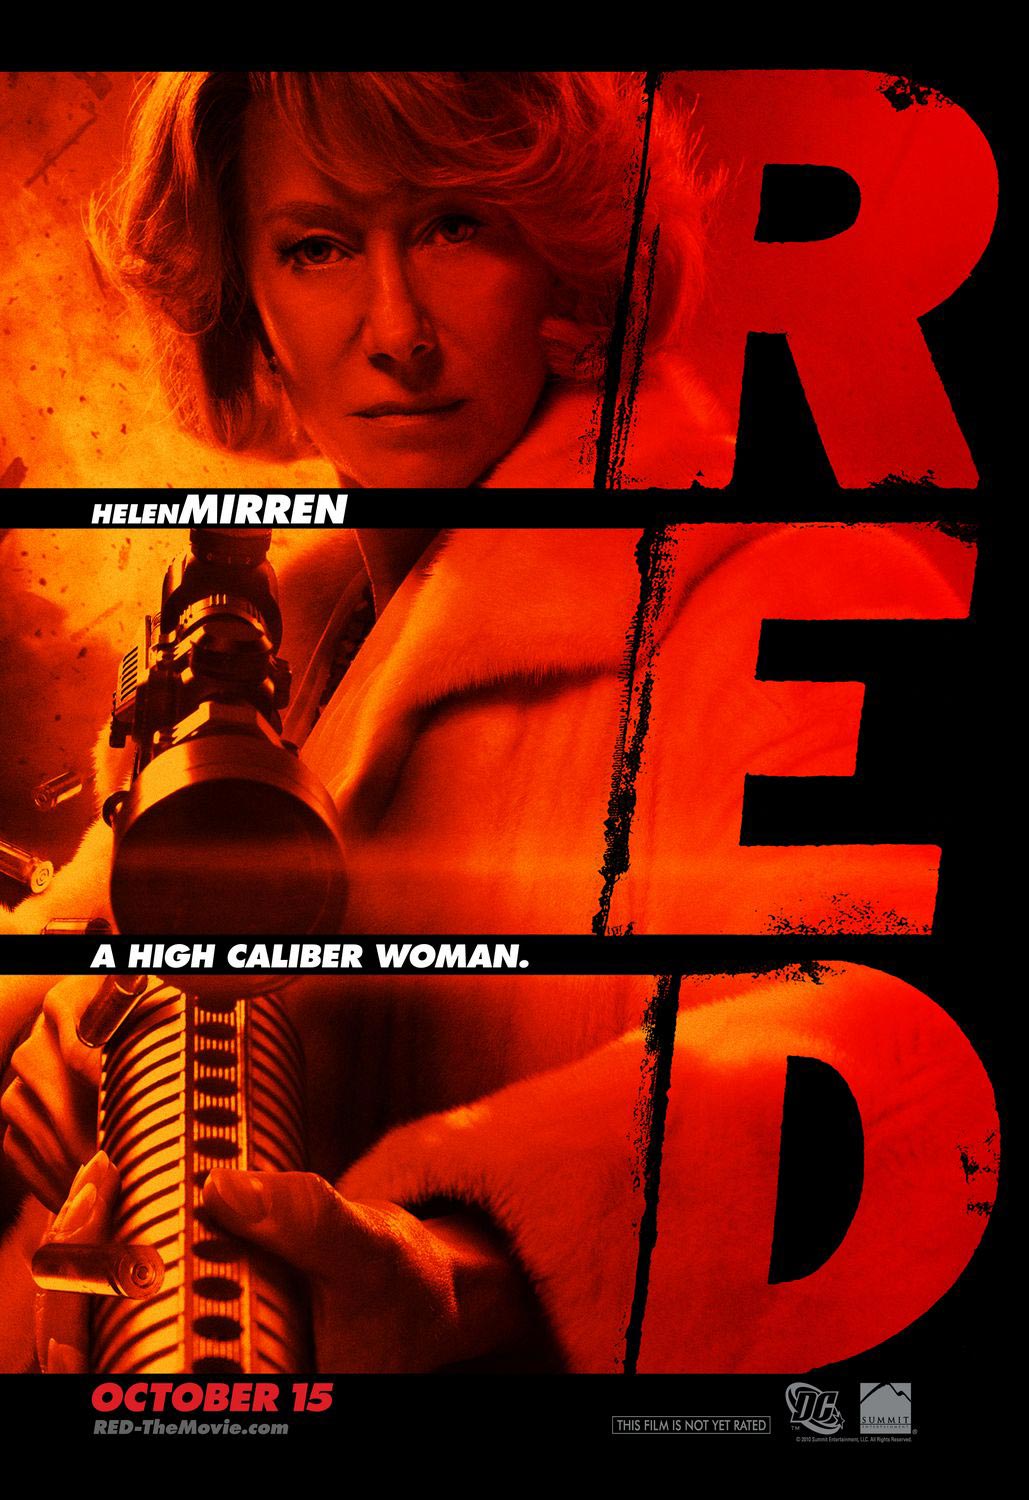 Red Victoria movie